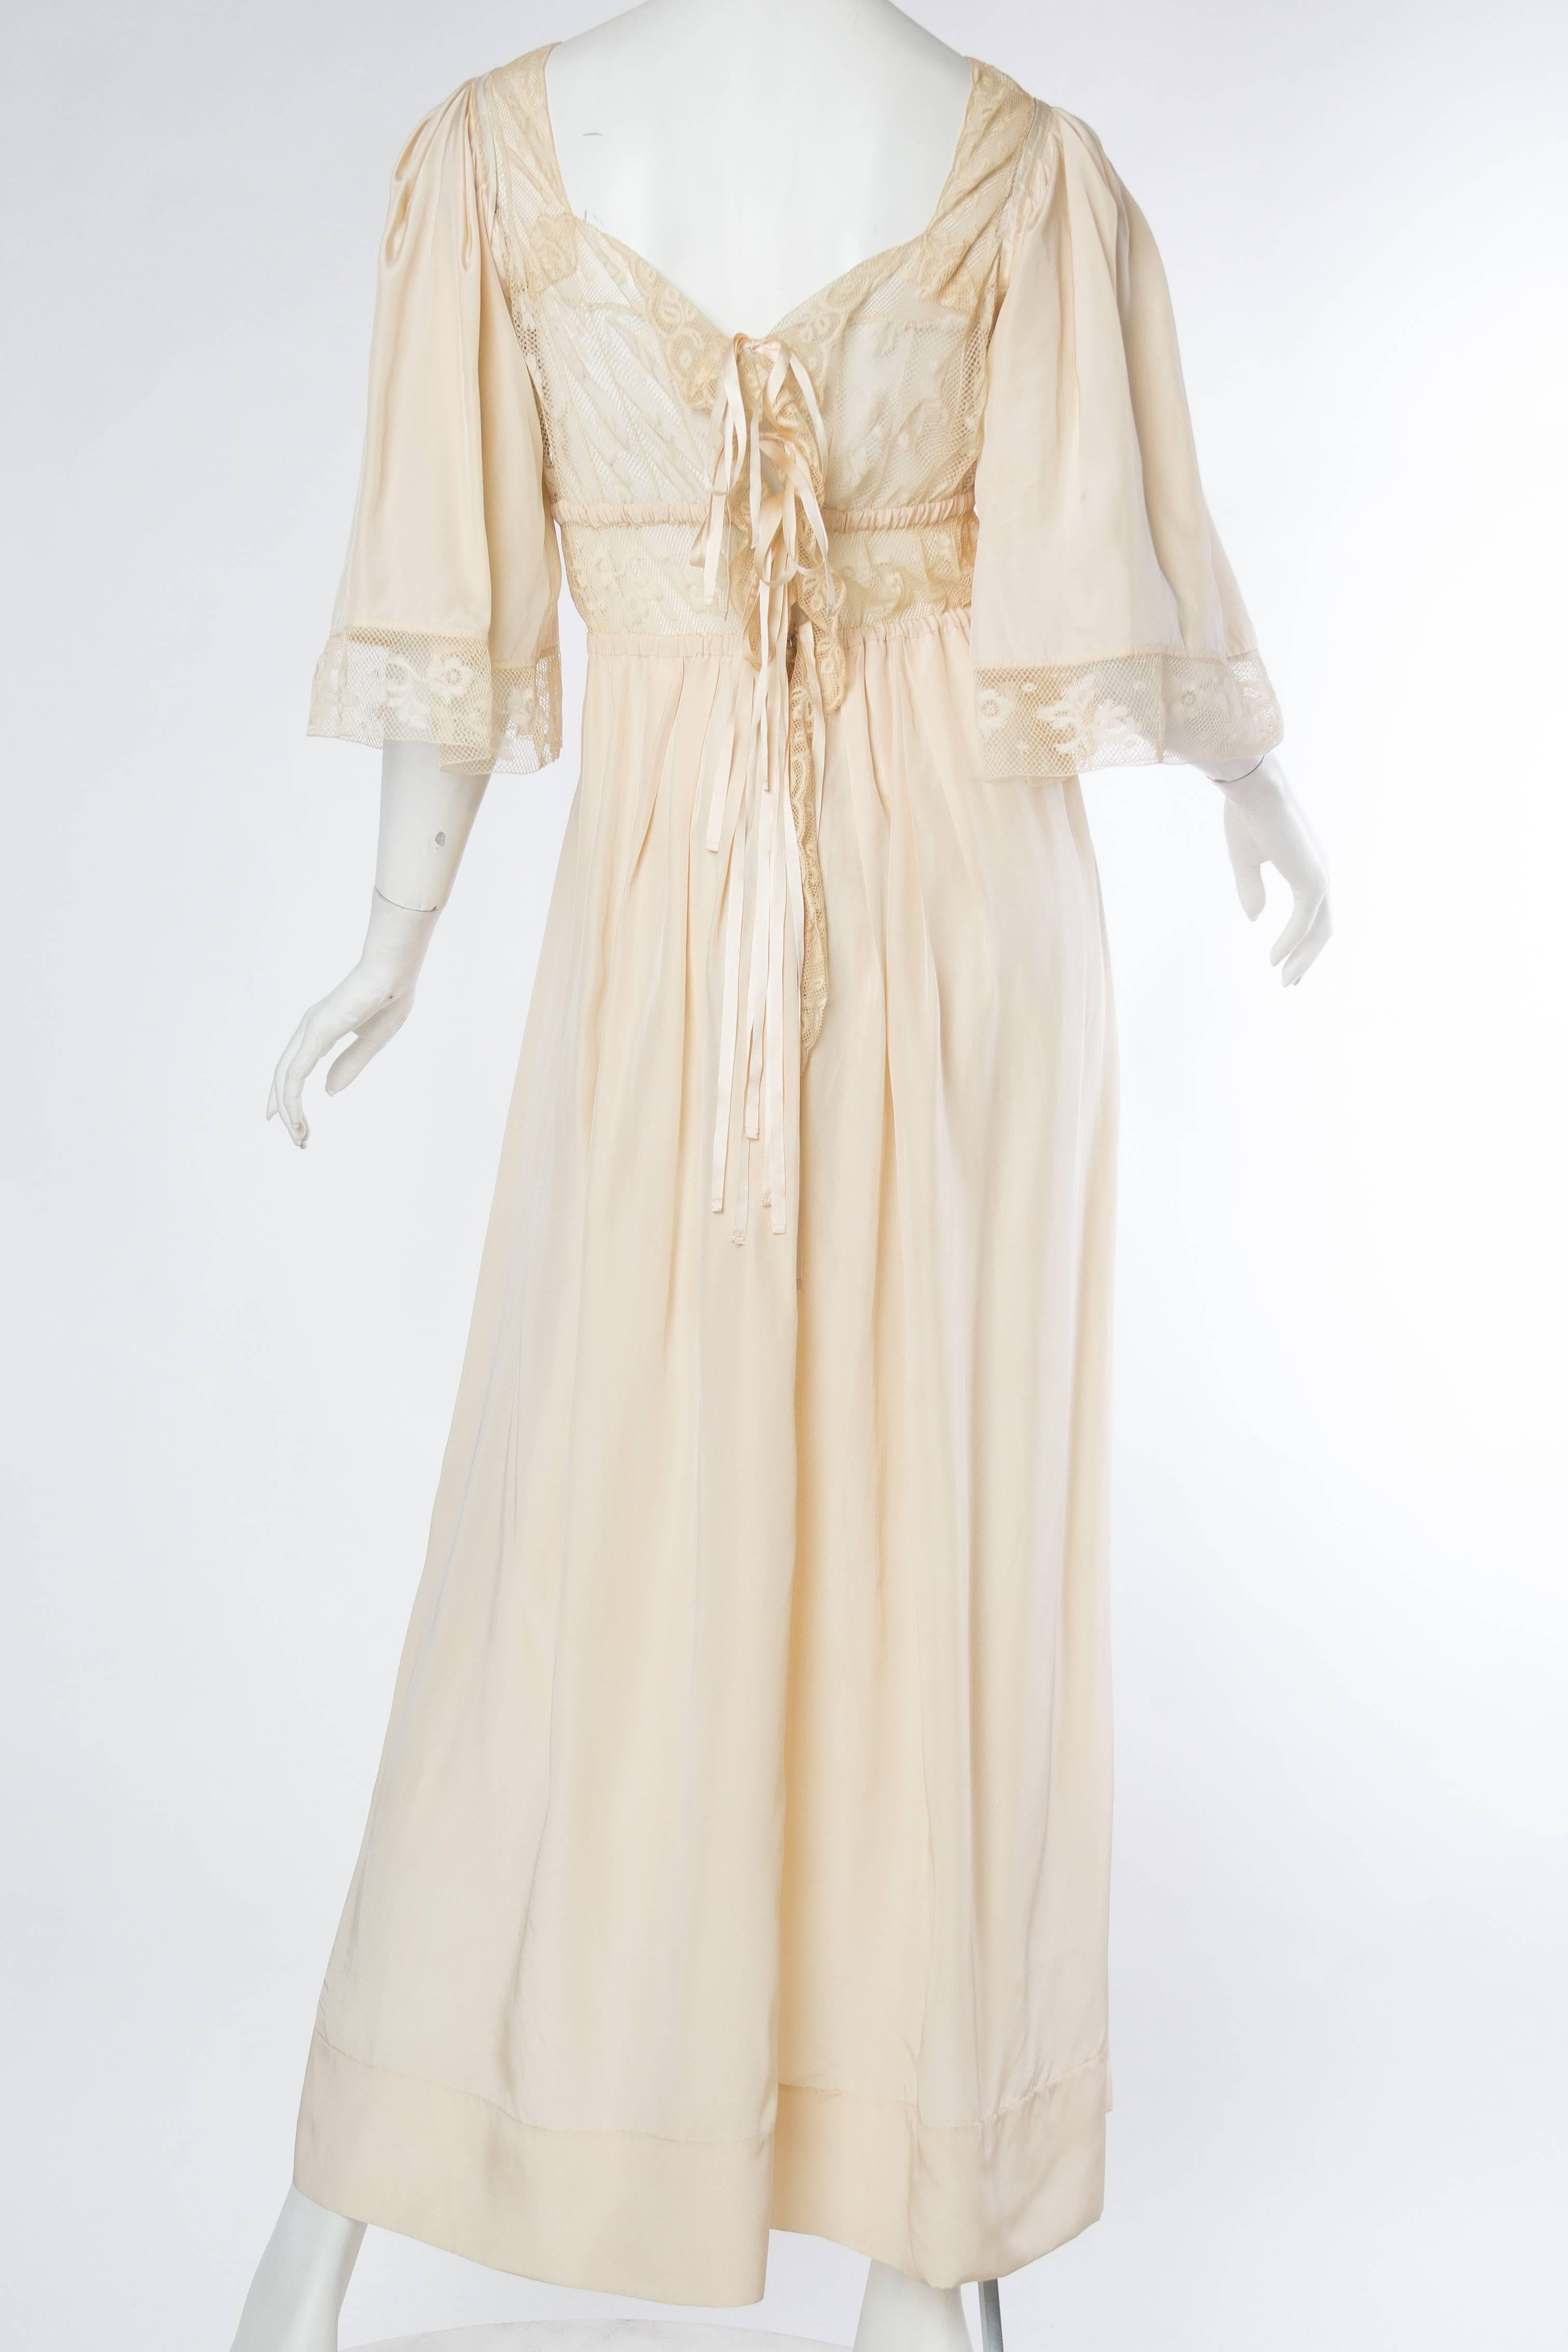 Edwardian Silk and Lace Negligee Dress 1